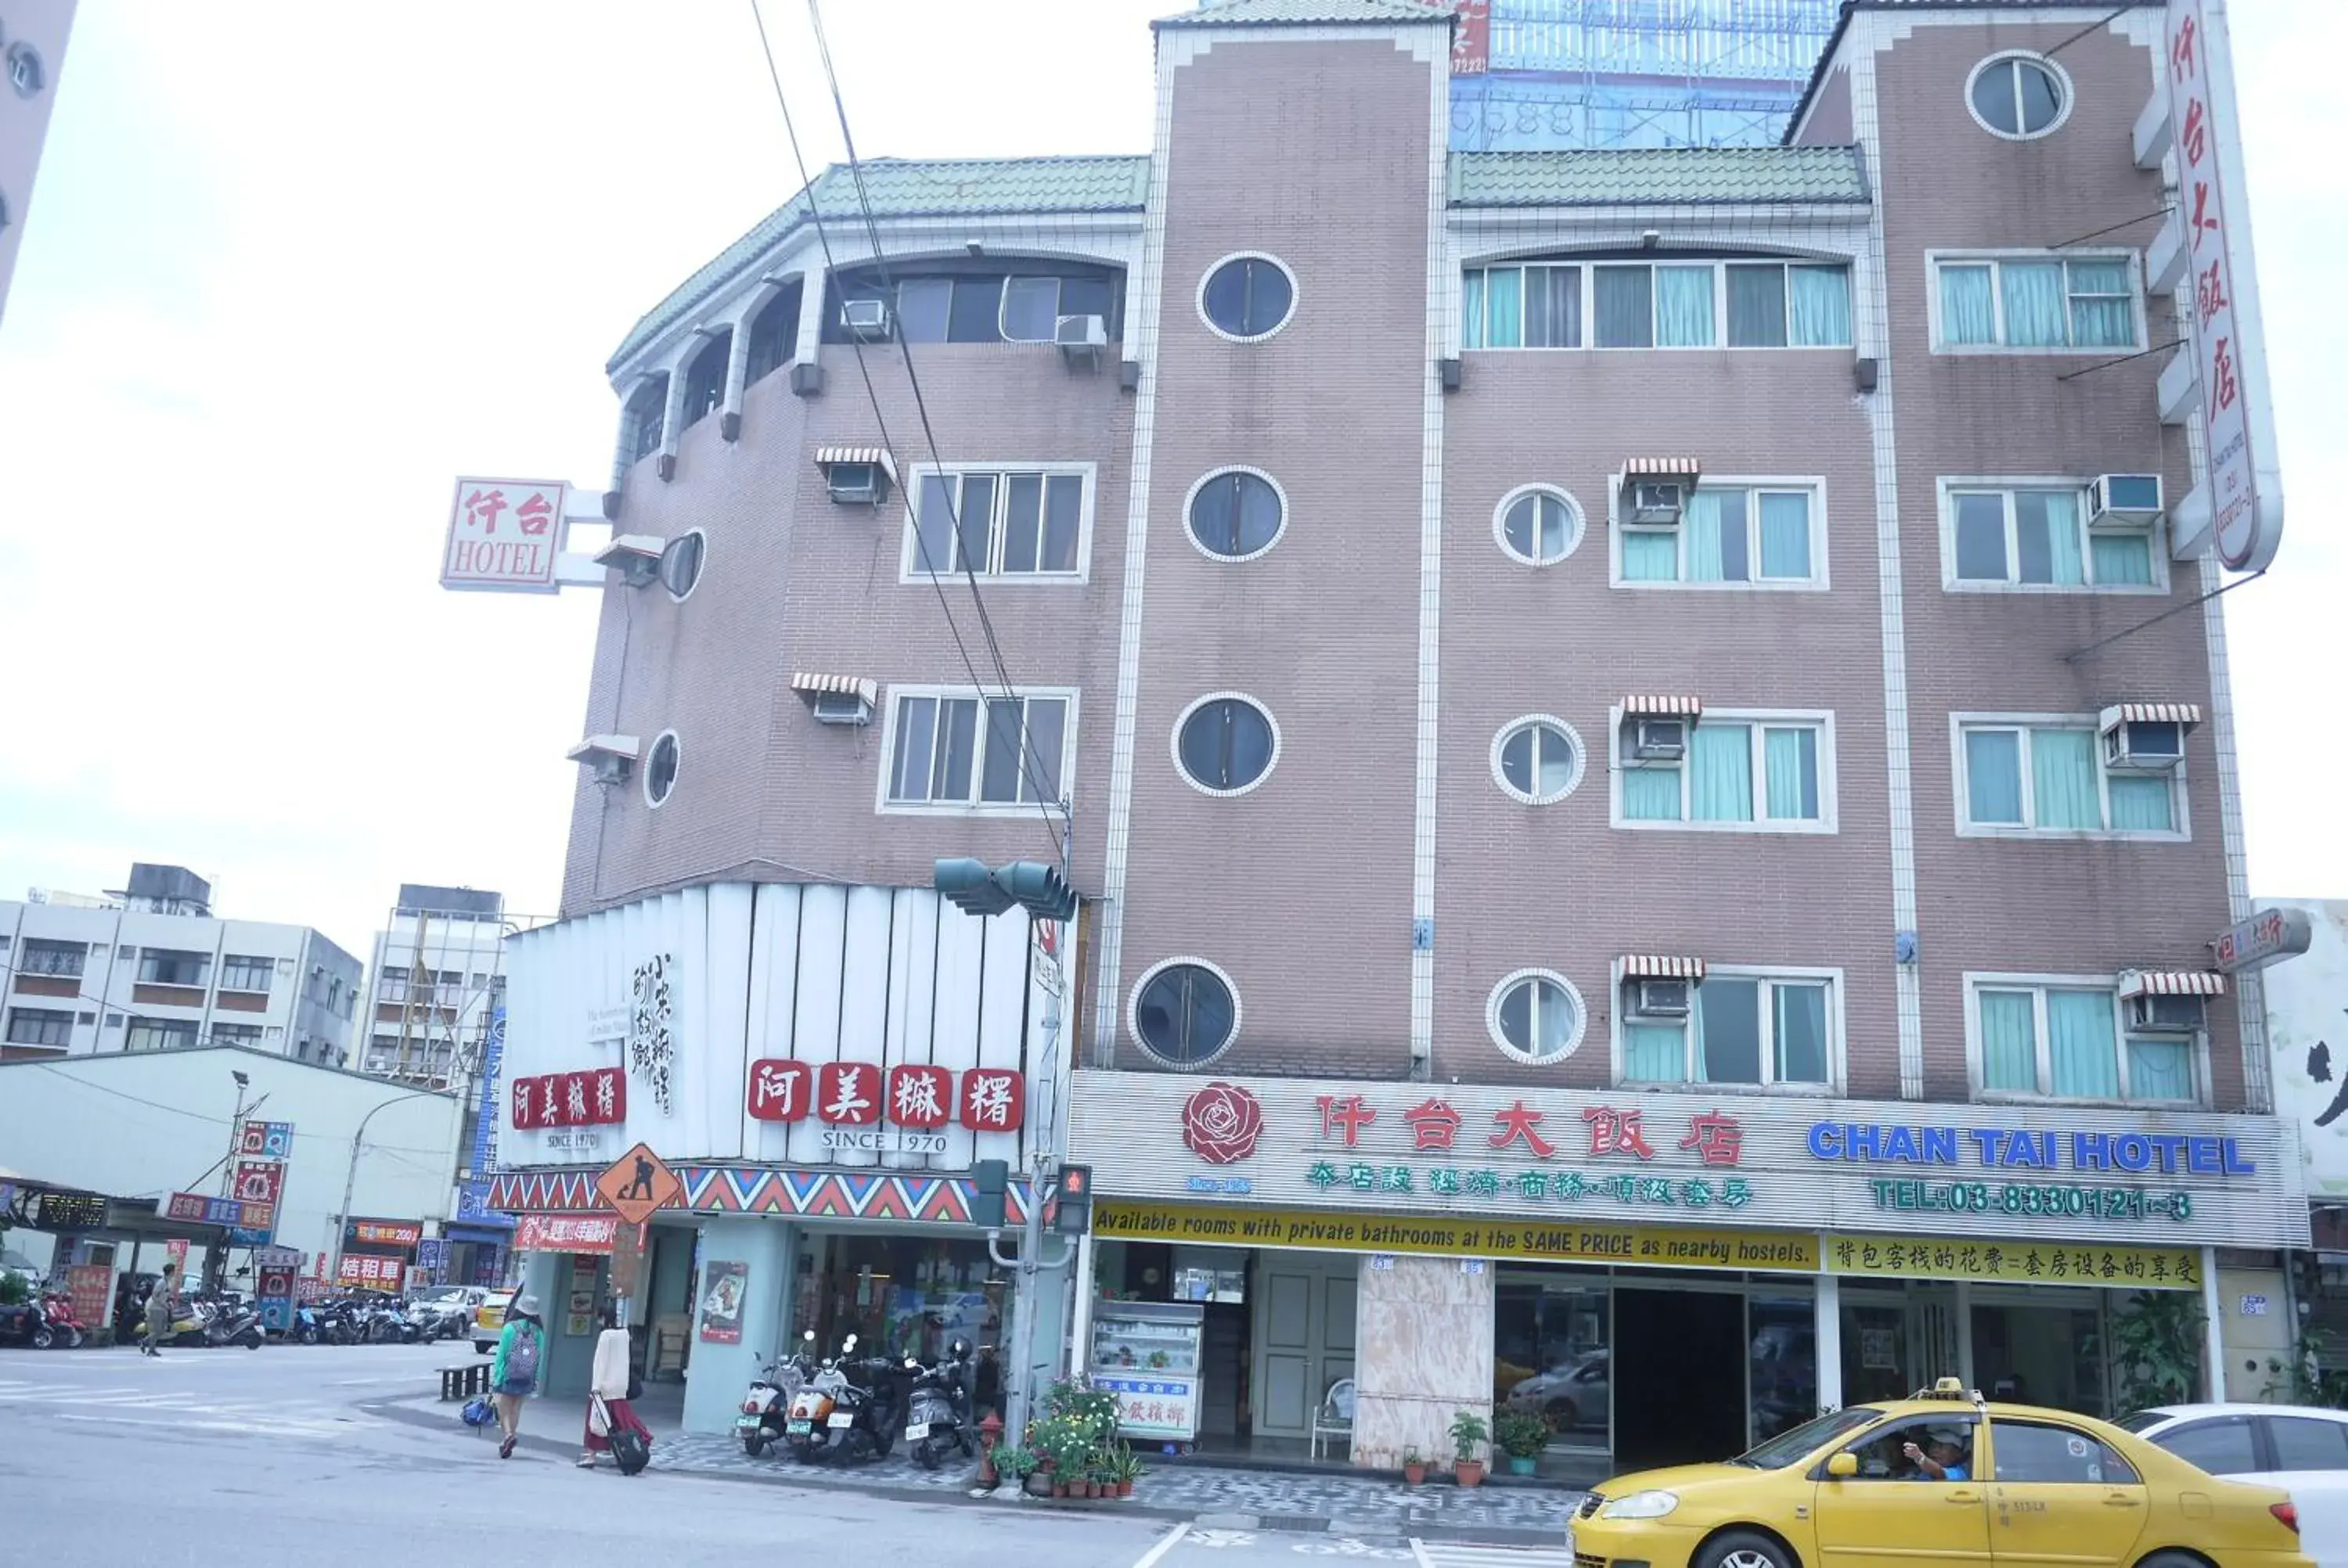 Facade/entrance, Property Building in Chantai Hotel